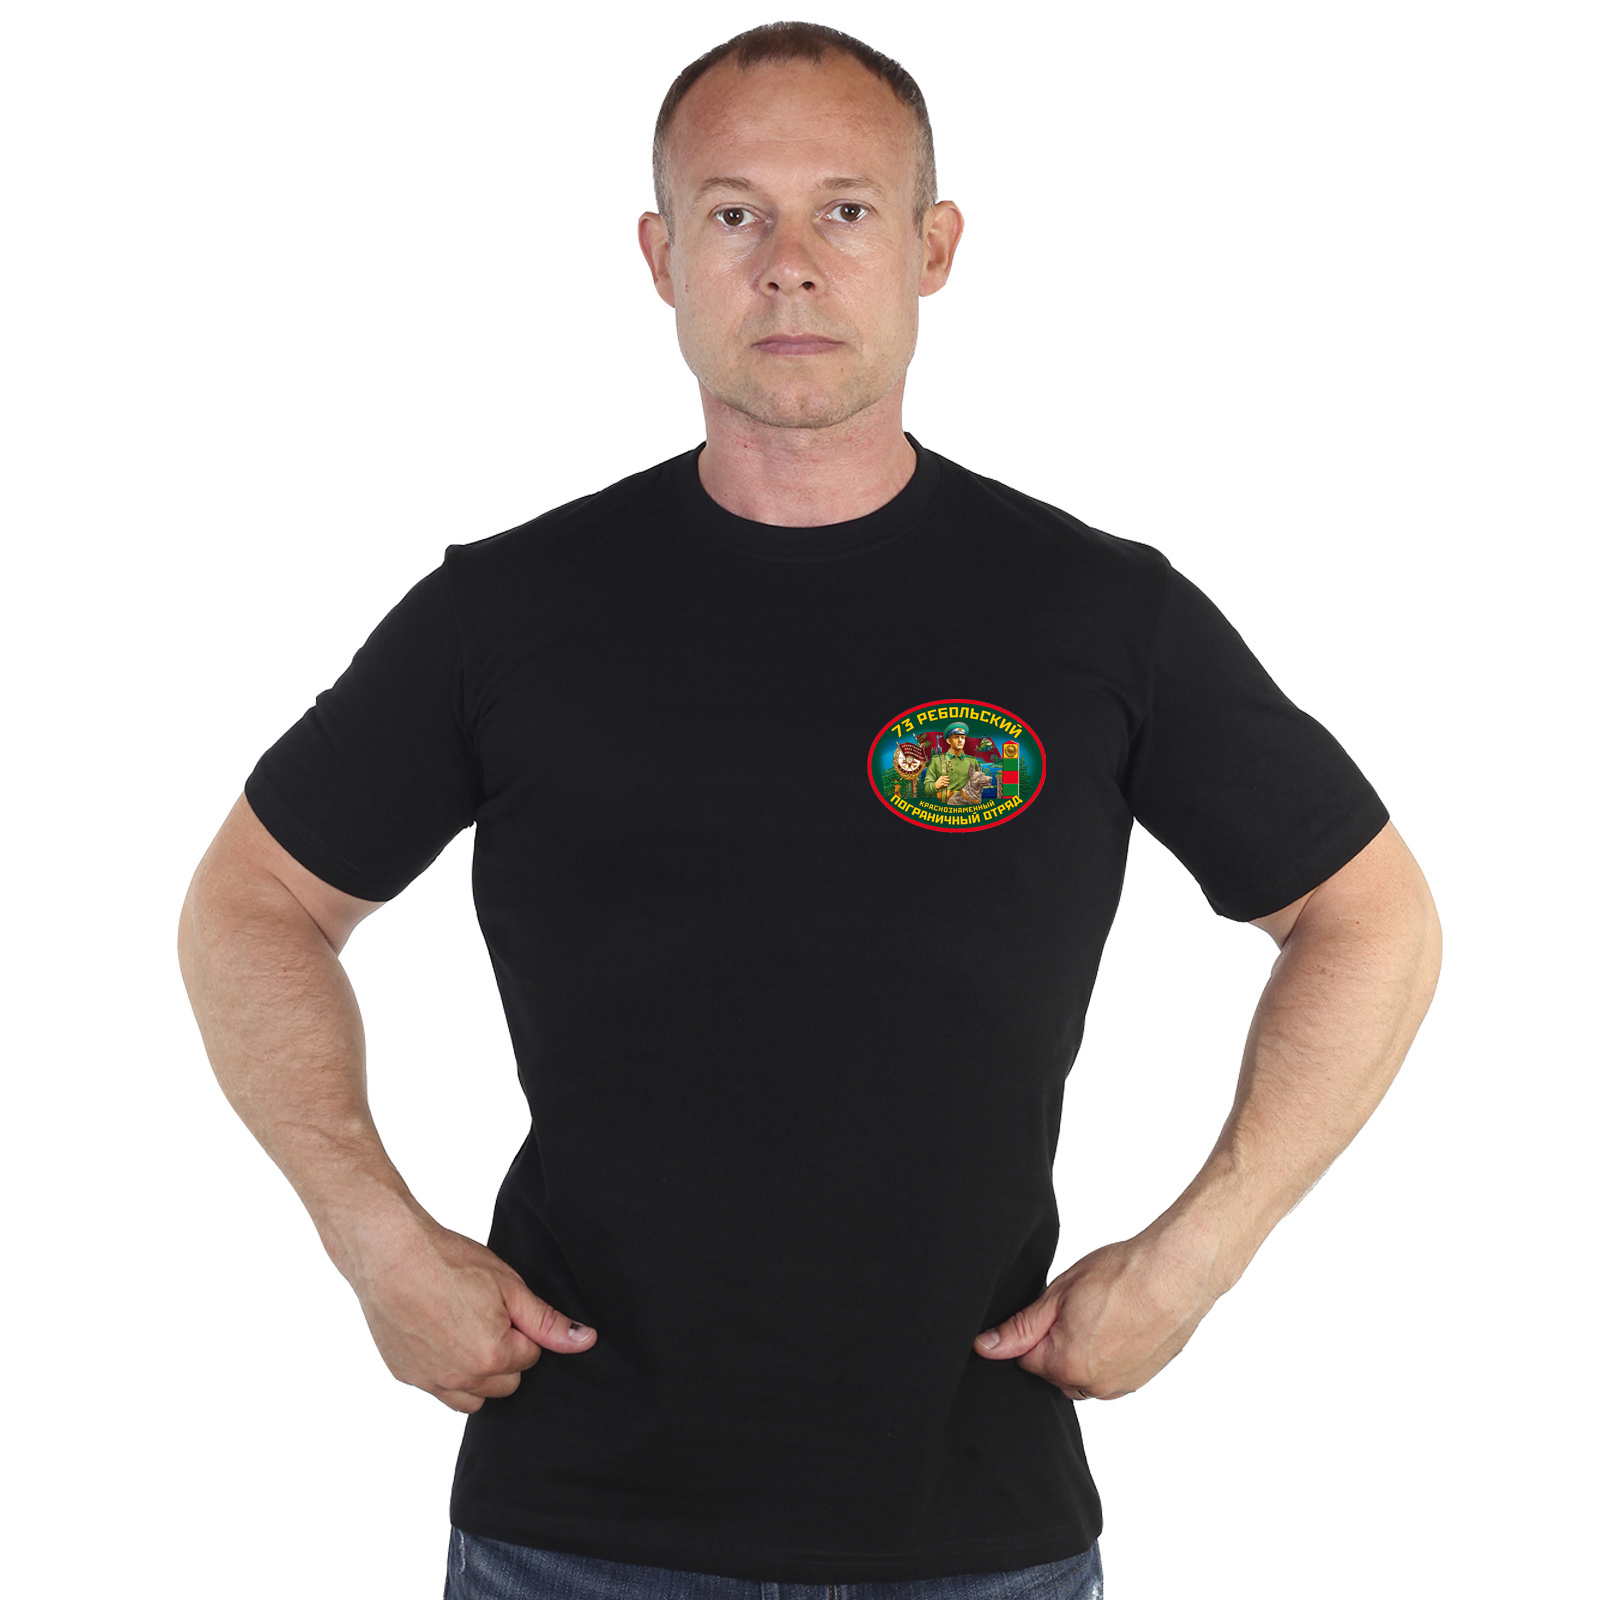 Чёрная футболка "73 Ребольский пограничный отряд" 